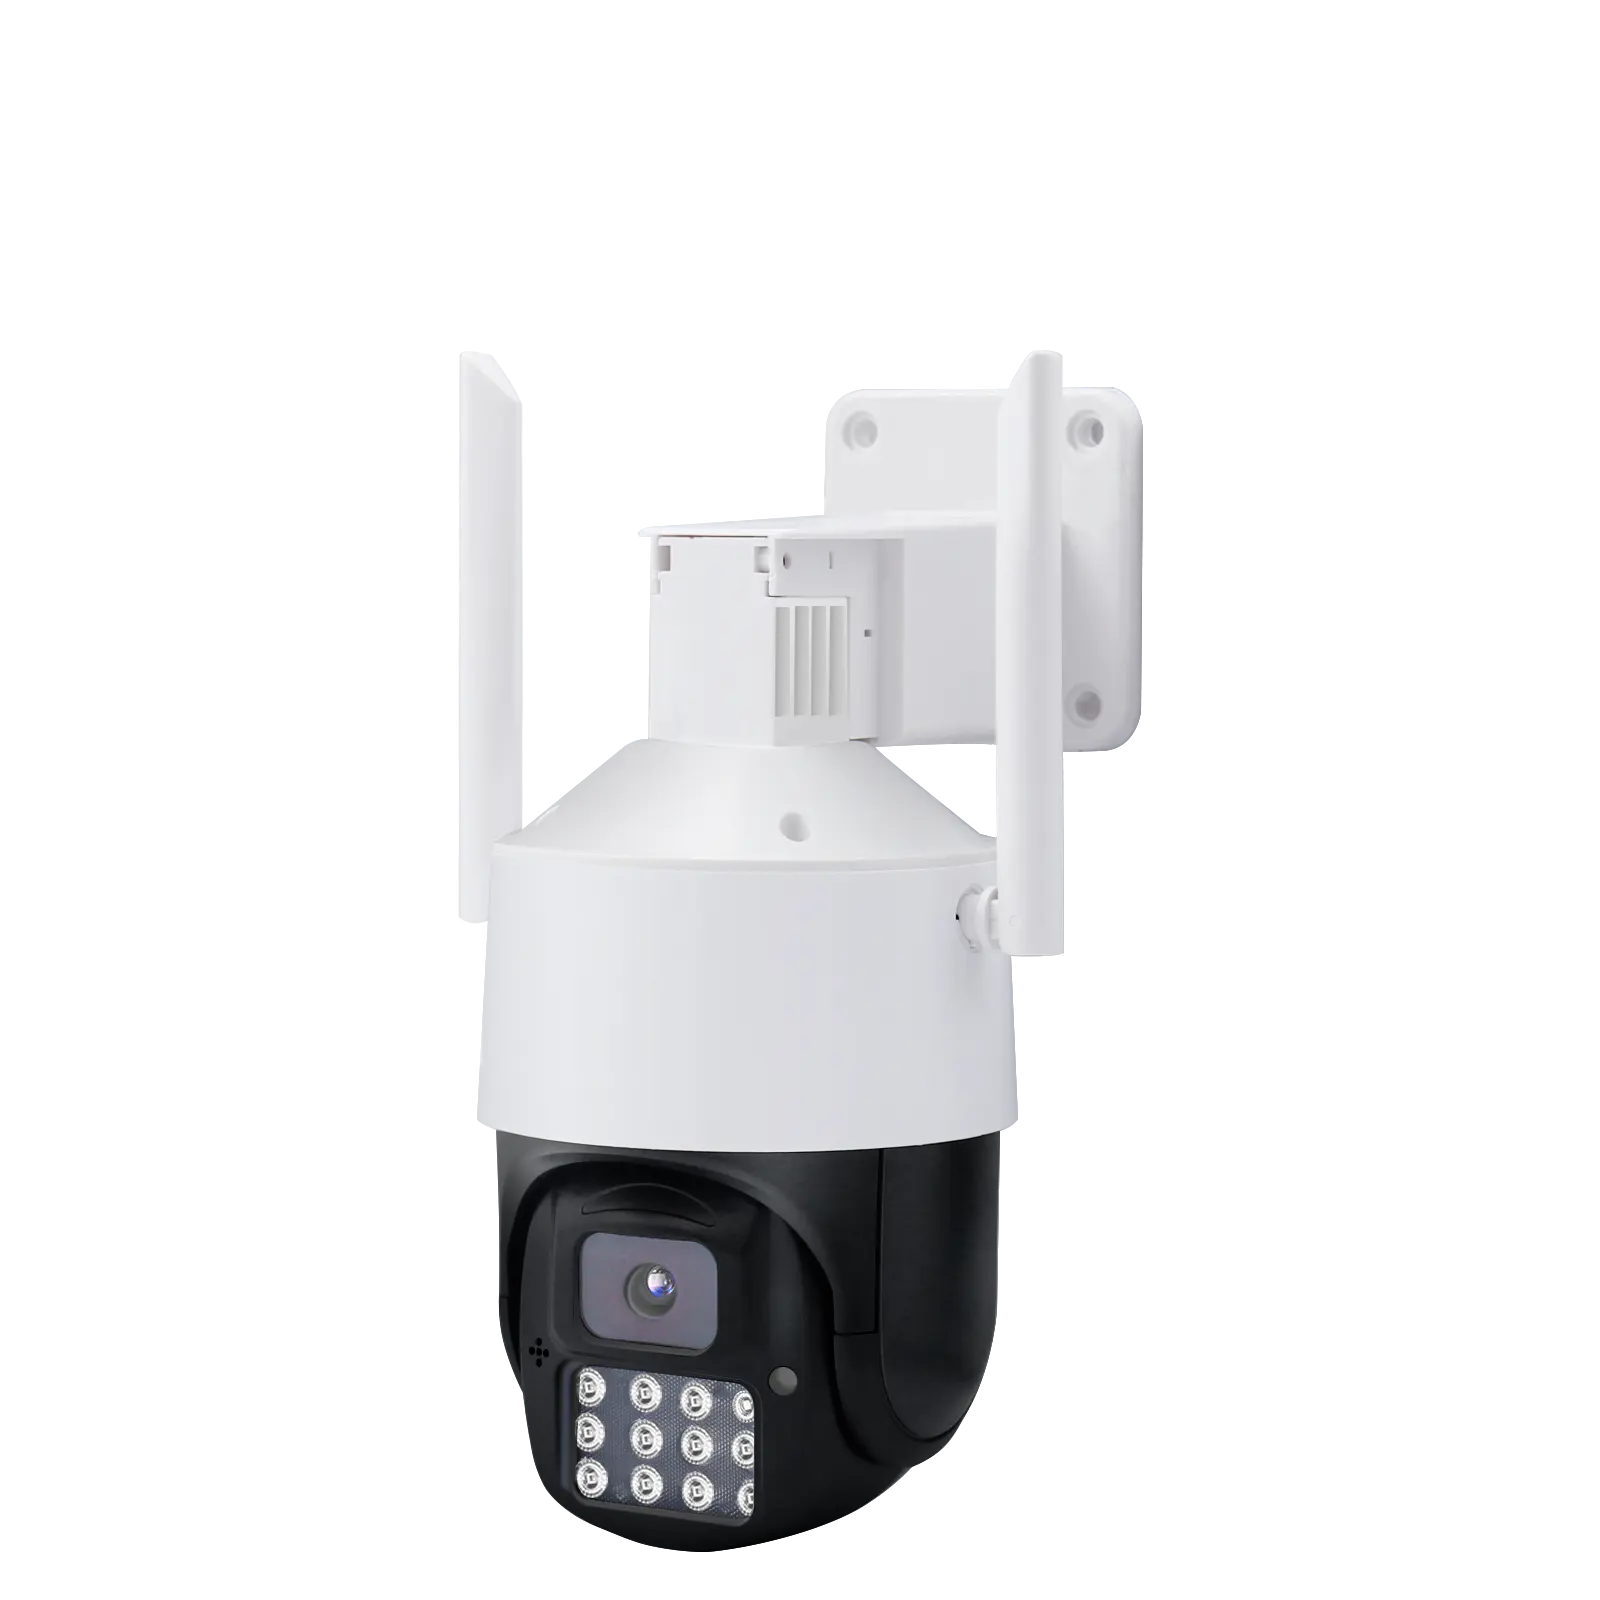 Vente chaude 5 MP Réseau Vidéo Surveillance Sans Fil Étanche Pleine Couleur Vision Nocturne Surveillance Mouvement Humain Caméra de Suivi